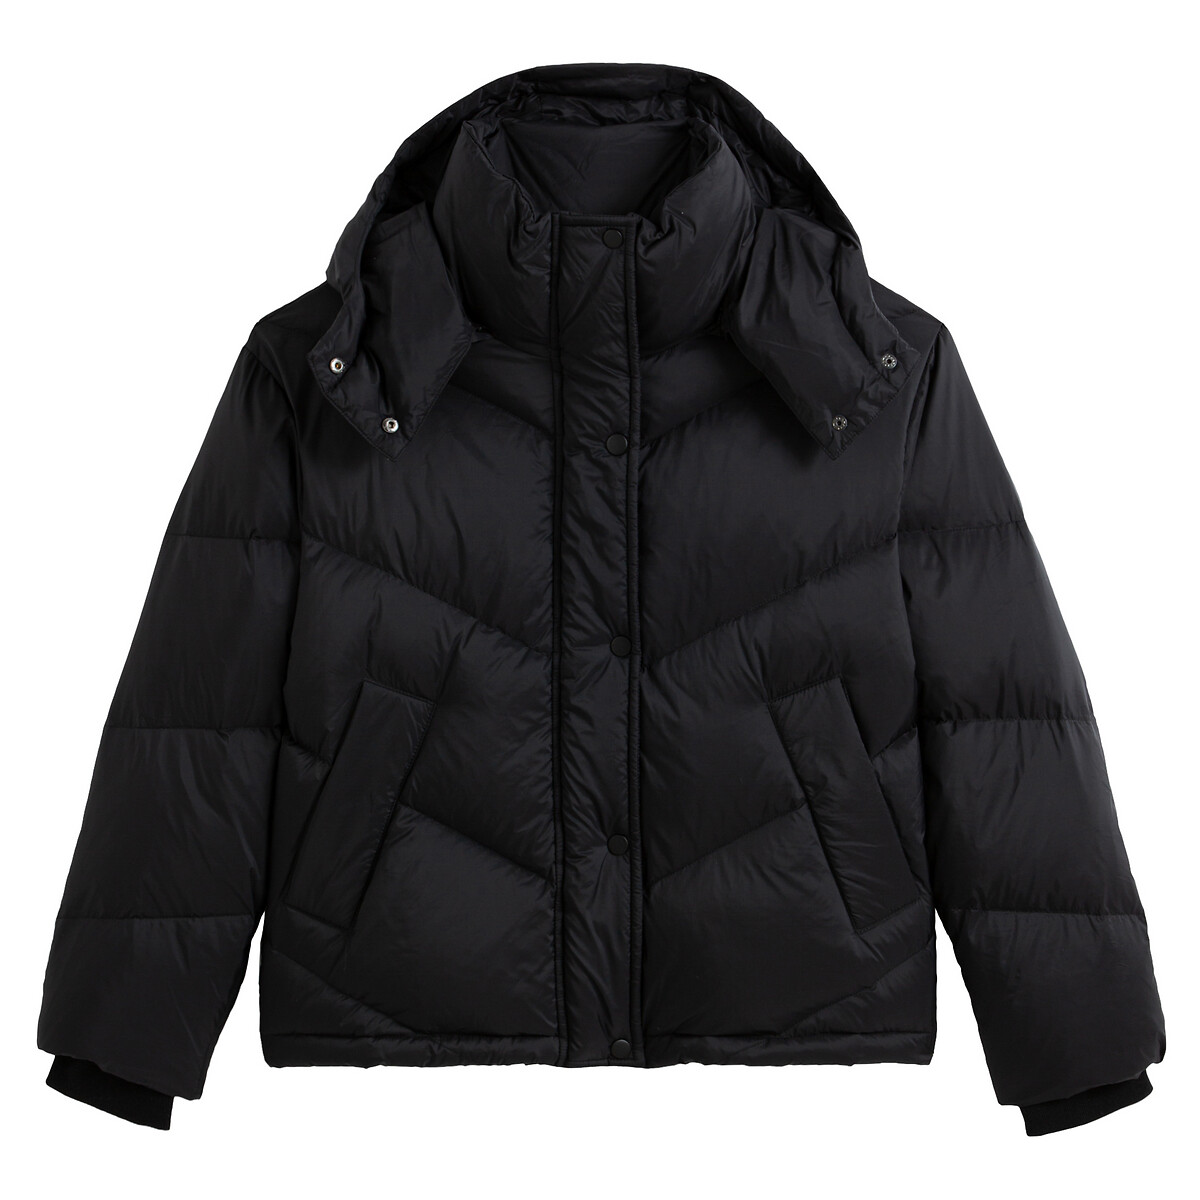 Куртка La Redoute Стеганая короткая с капюшоном 42 (FR) - 48 (RUS) черный, размер 42 (FR) - 48 (RUS) Стеганая короткая с капюшоном 42 (FR) - 48 (RUS) черный - фото 5